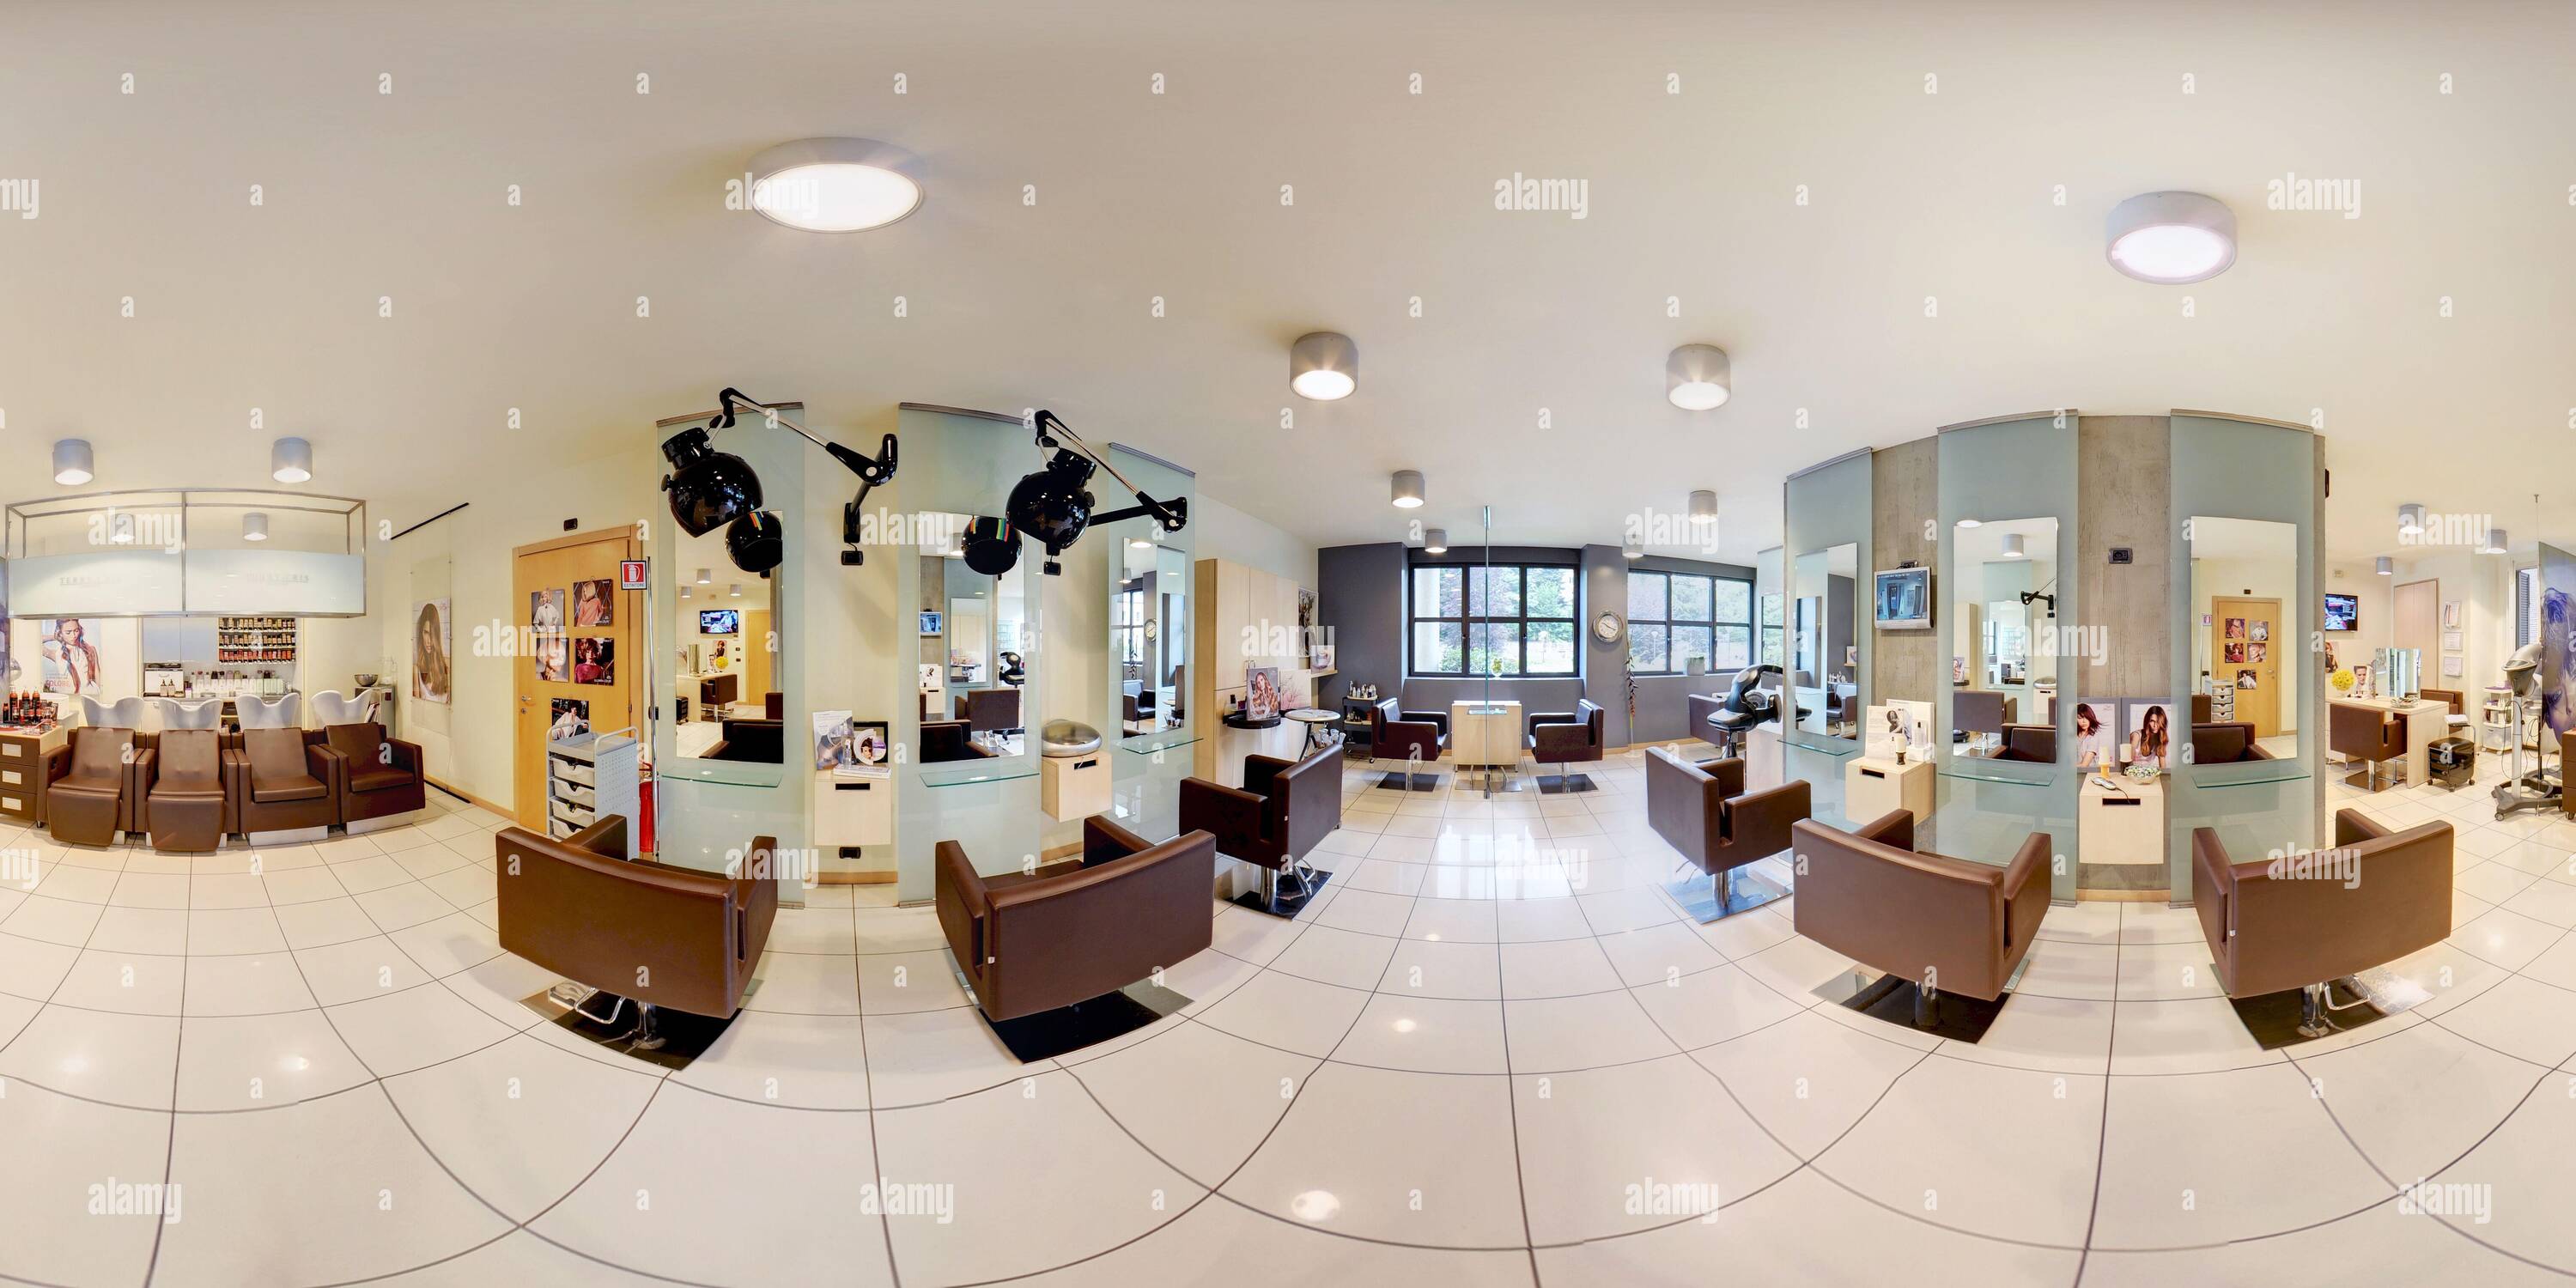 Visualizzazione panoramica a 360 gradi di panorama a 360 gradi di un moderno e pulito elegante salone di parrucchiere interno con comodi posti a sedere vicino a specchi, pavimento piastrellato e asciugacapelli a parete